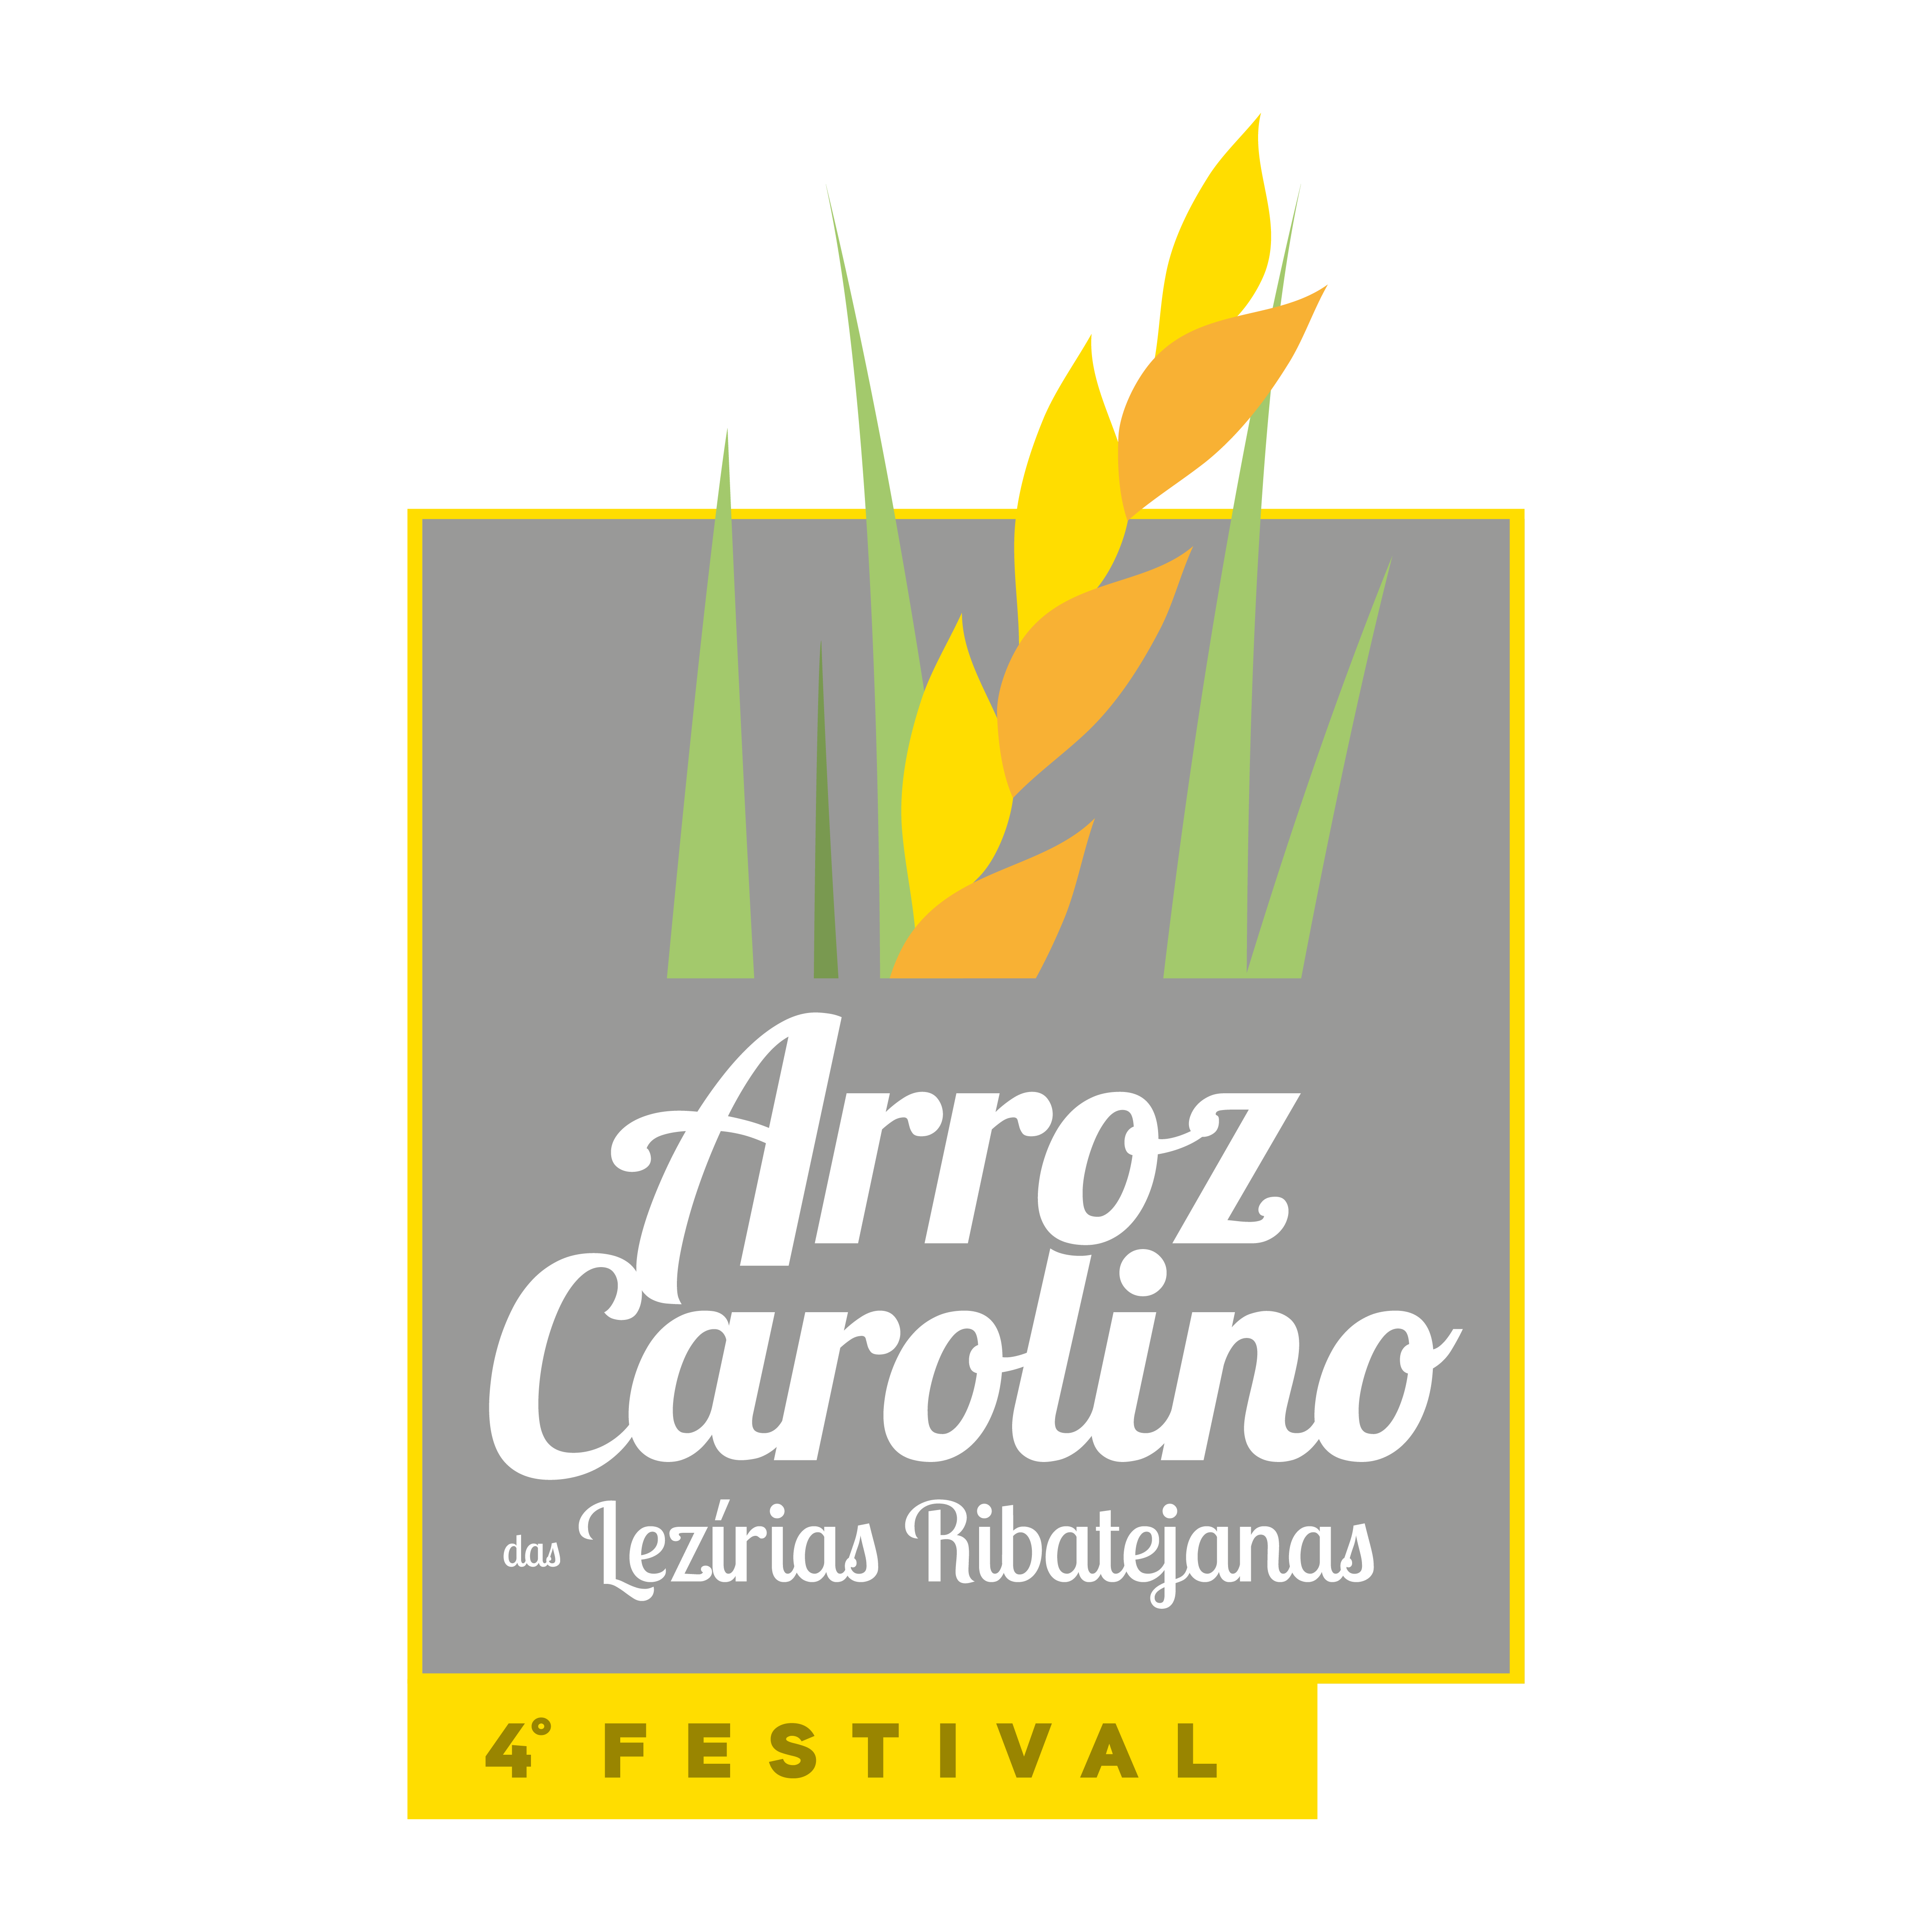 Festival do Arroz Carolino das Lezírias Ribatejanas